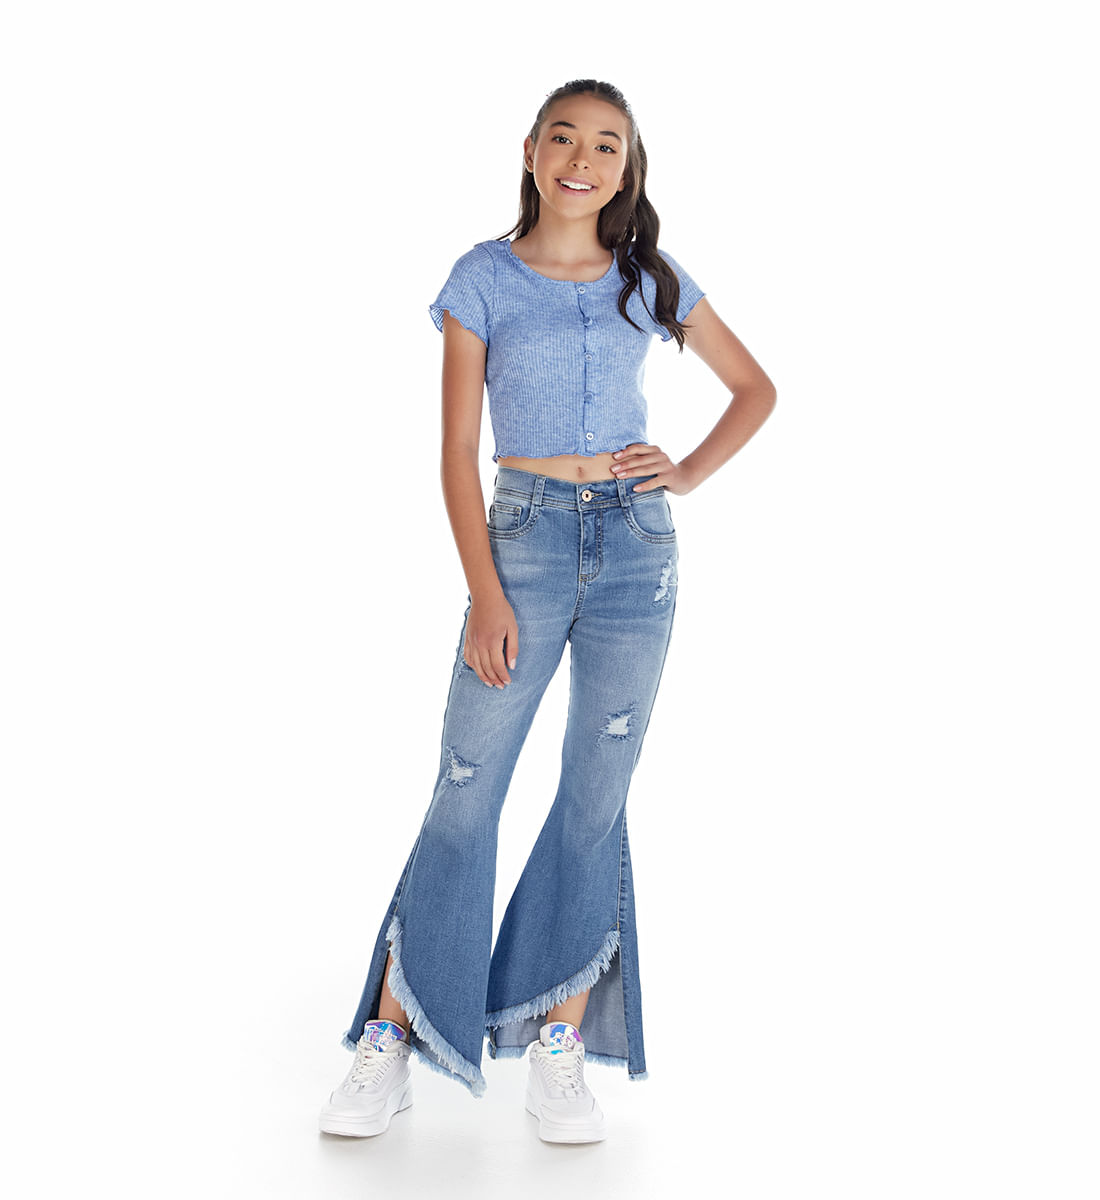 Ropa y jeans para niñas y adolescentes